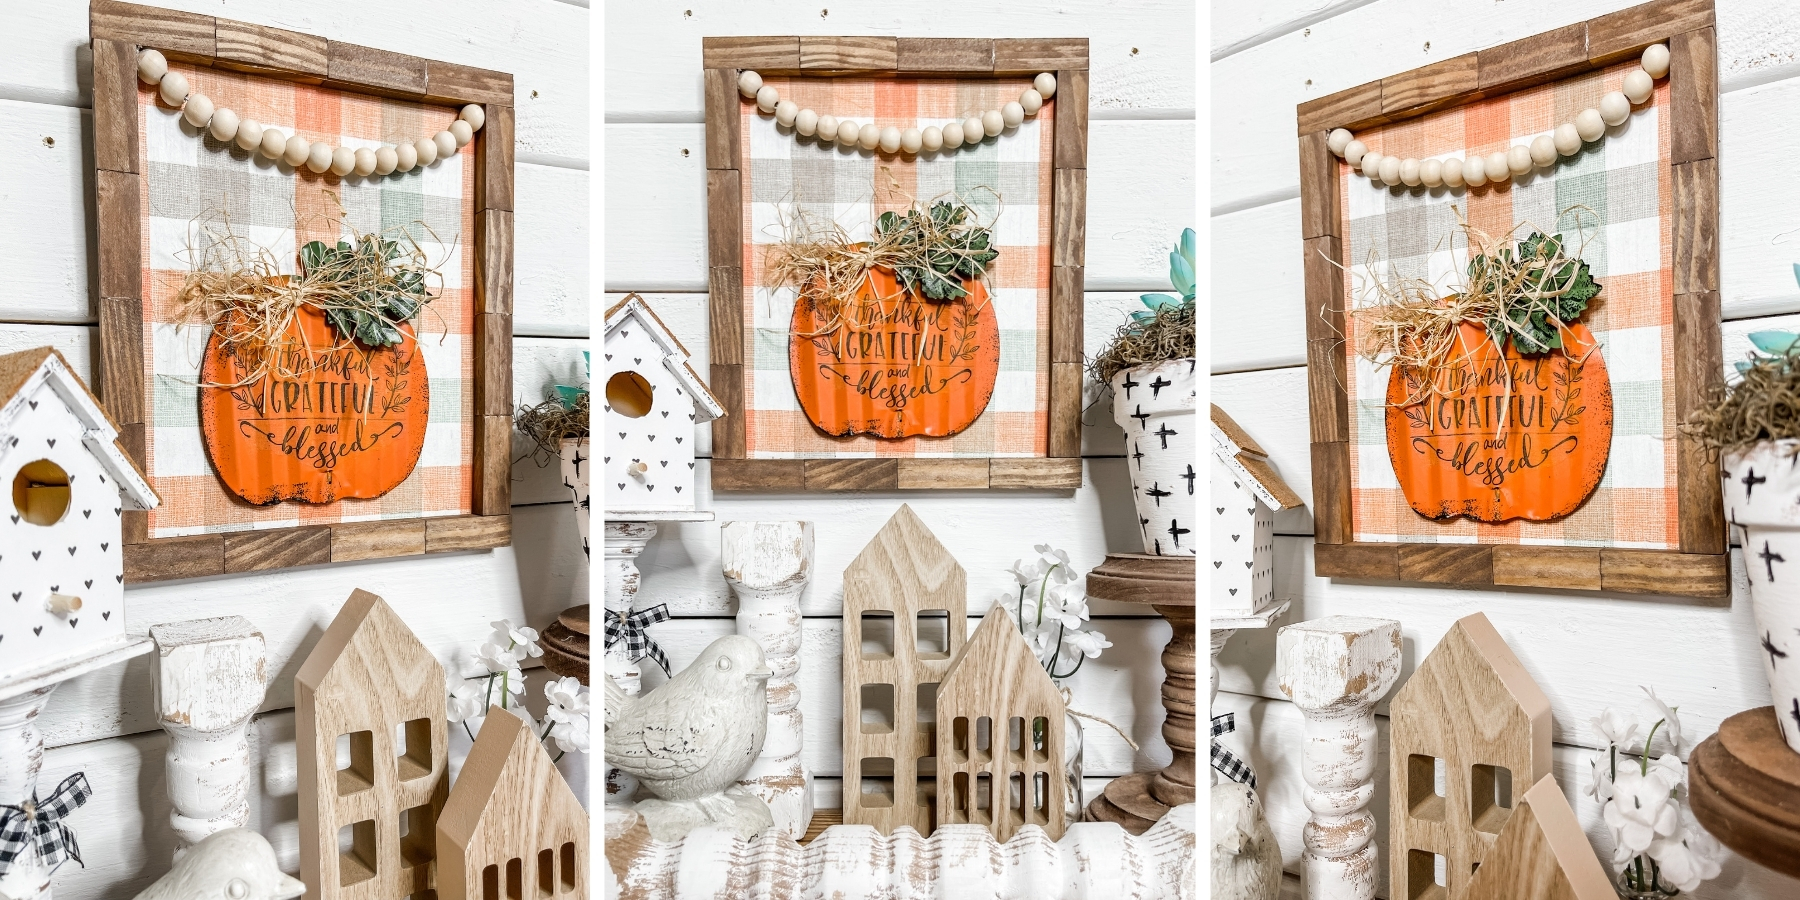 DIY Fall Pumpkin Rustic Home Decor